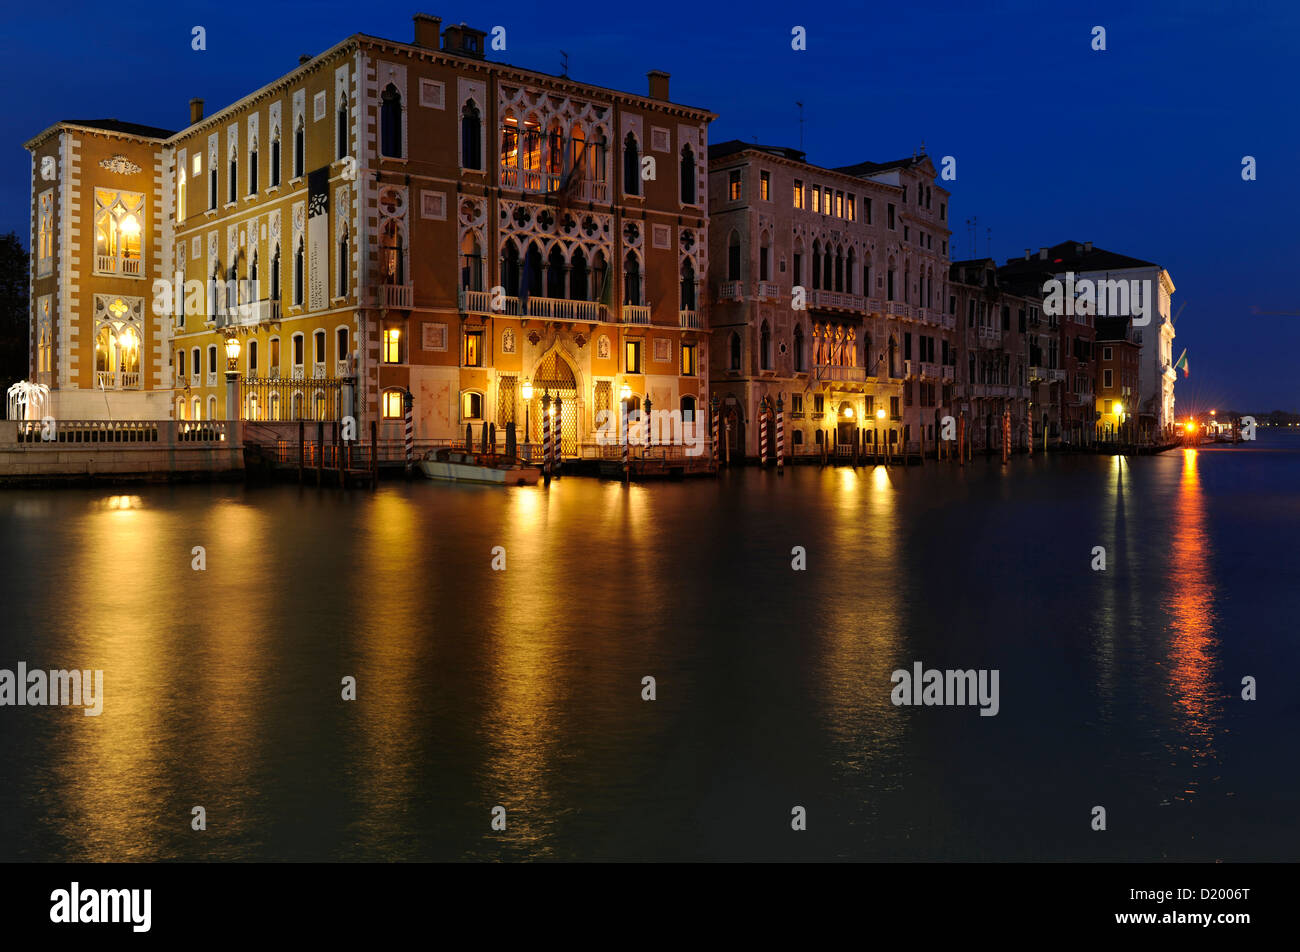 Palazzo Barbaro at night, Venice, Italy Stock Photo